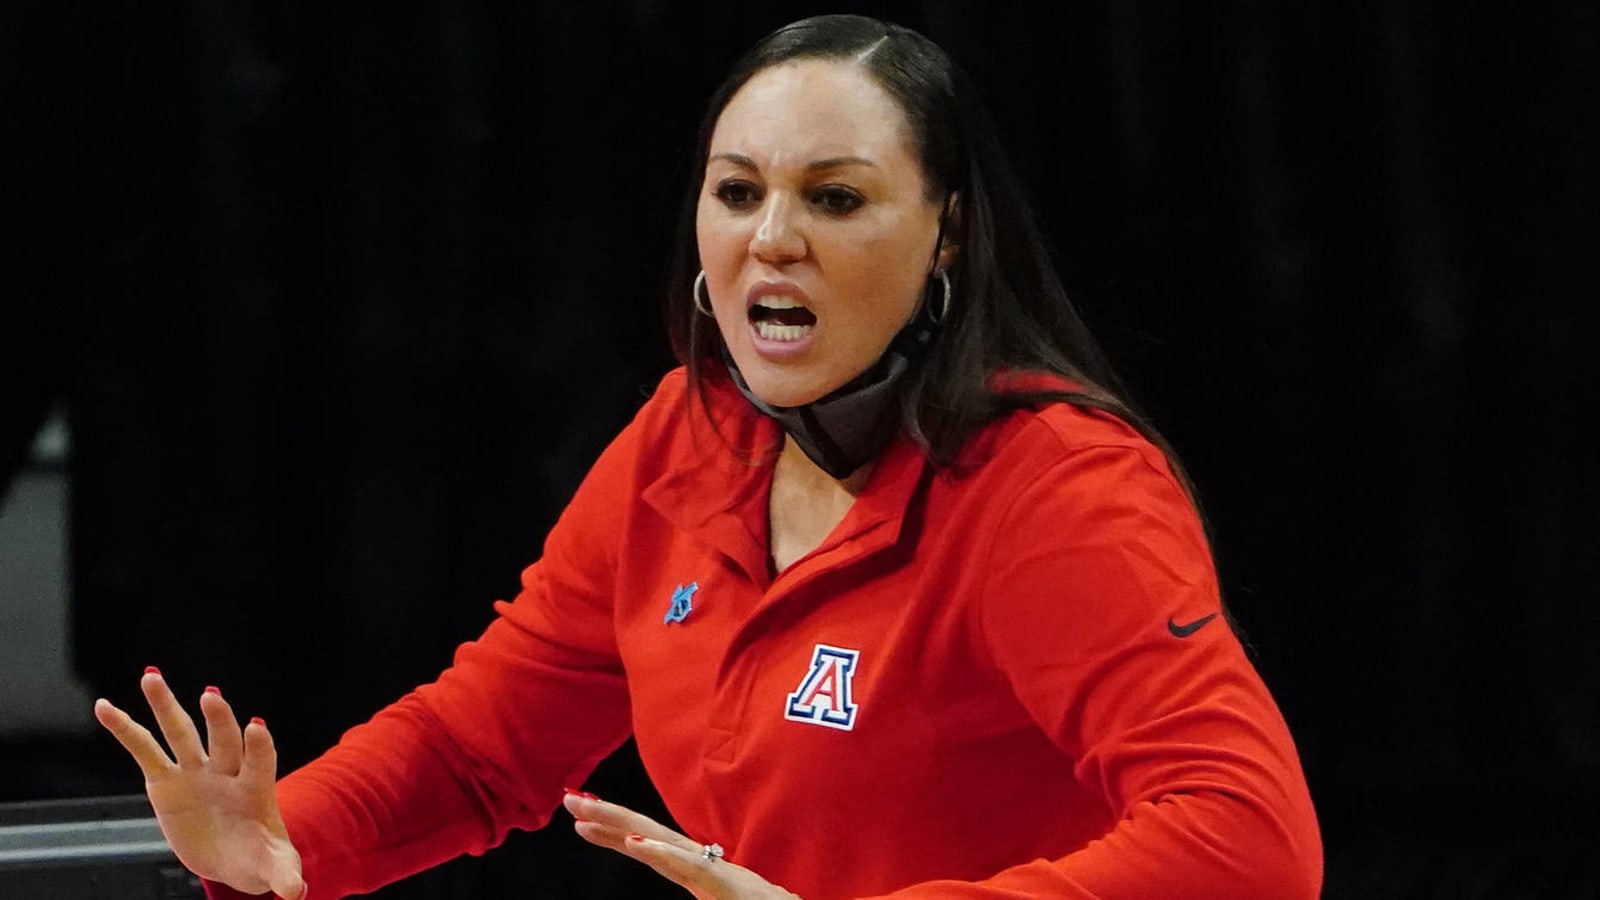 Arizona coach Adia Barnes explains emotion behind profane outburst